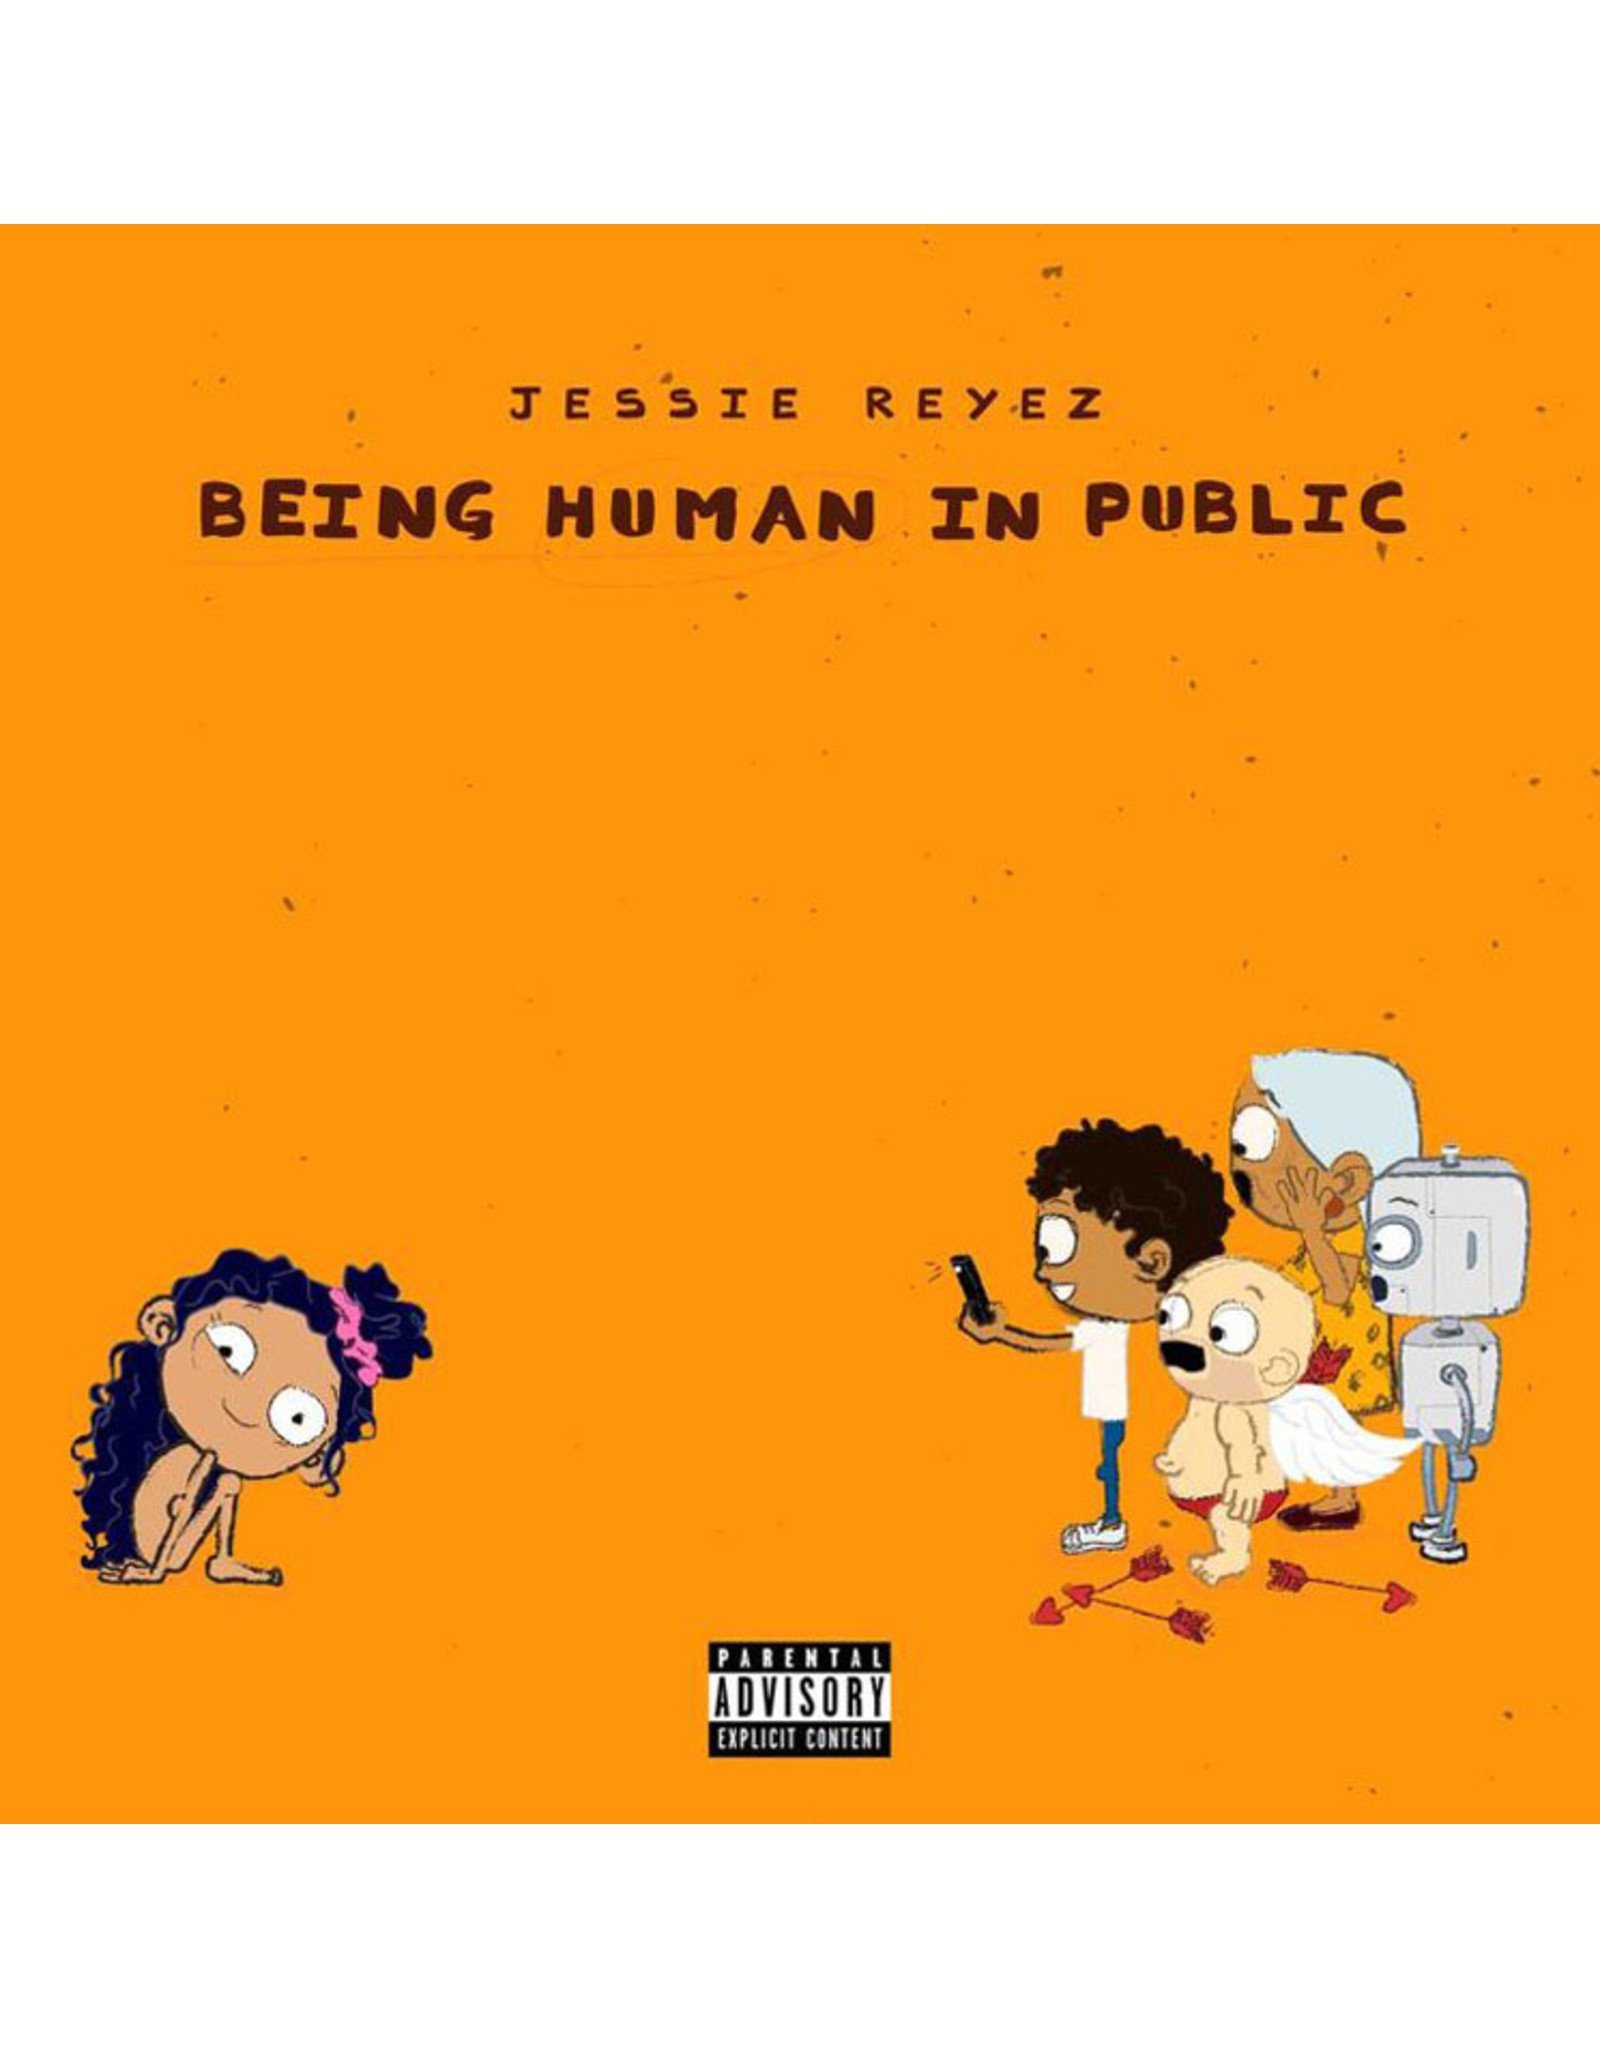 Jessie Reyez - Being Human In Public EP / Kiddo EP